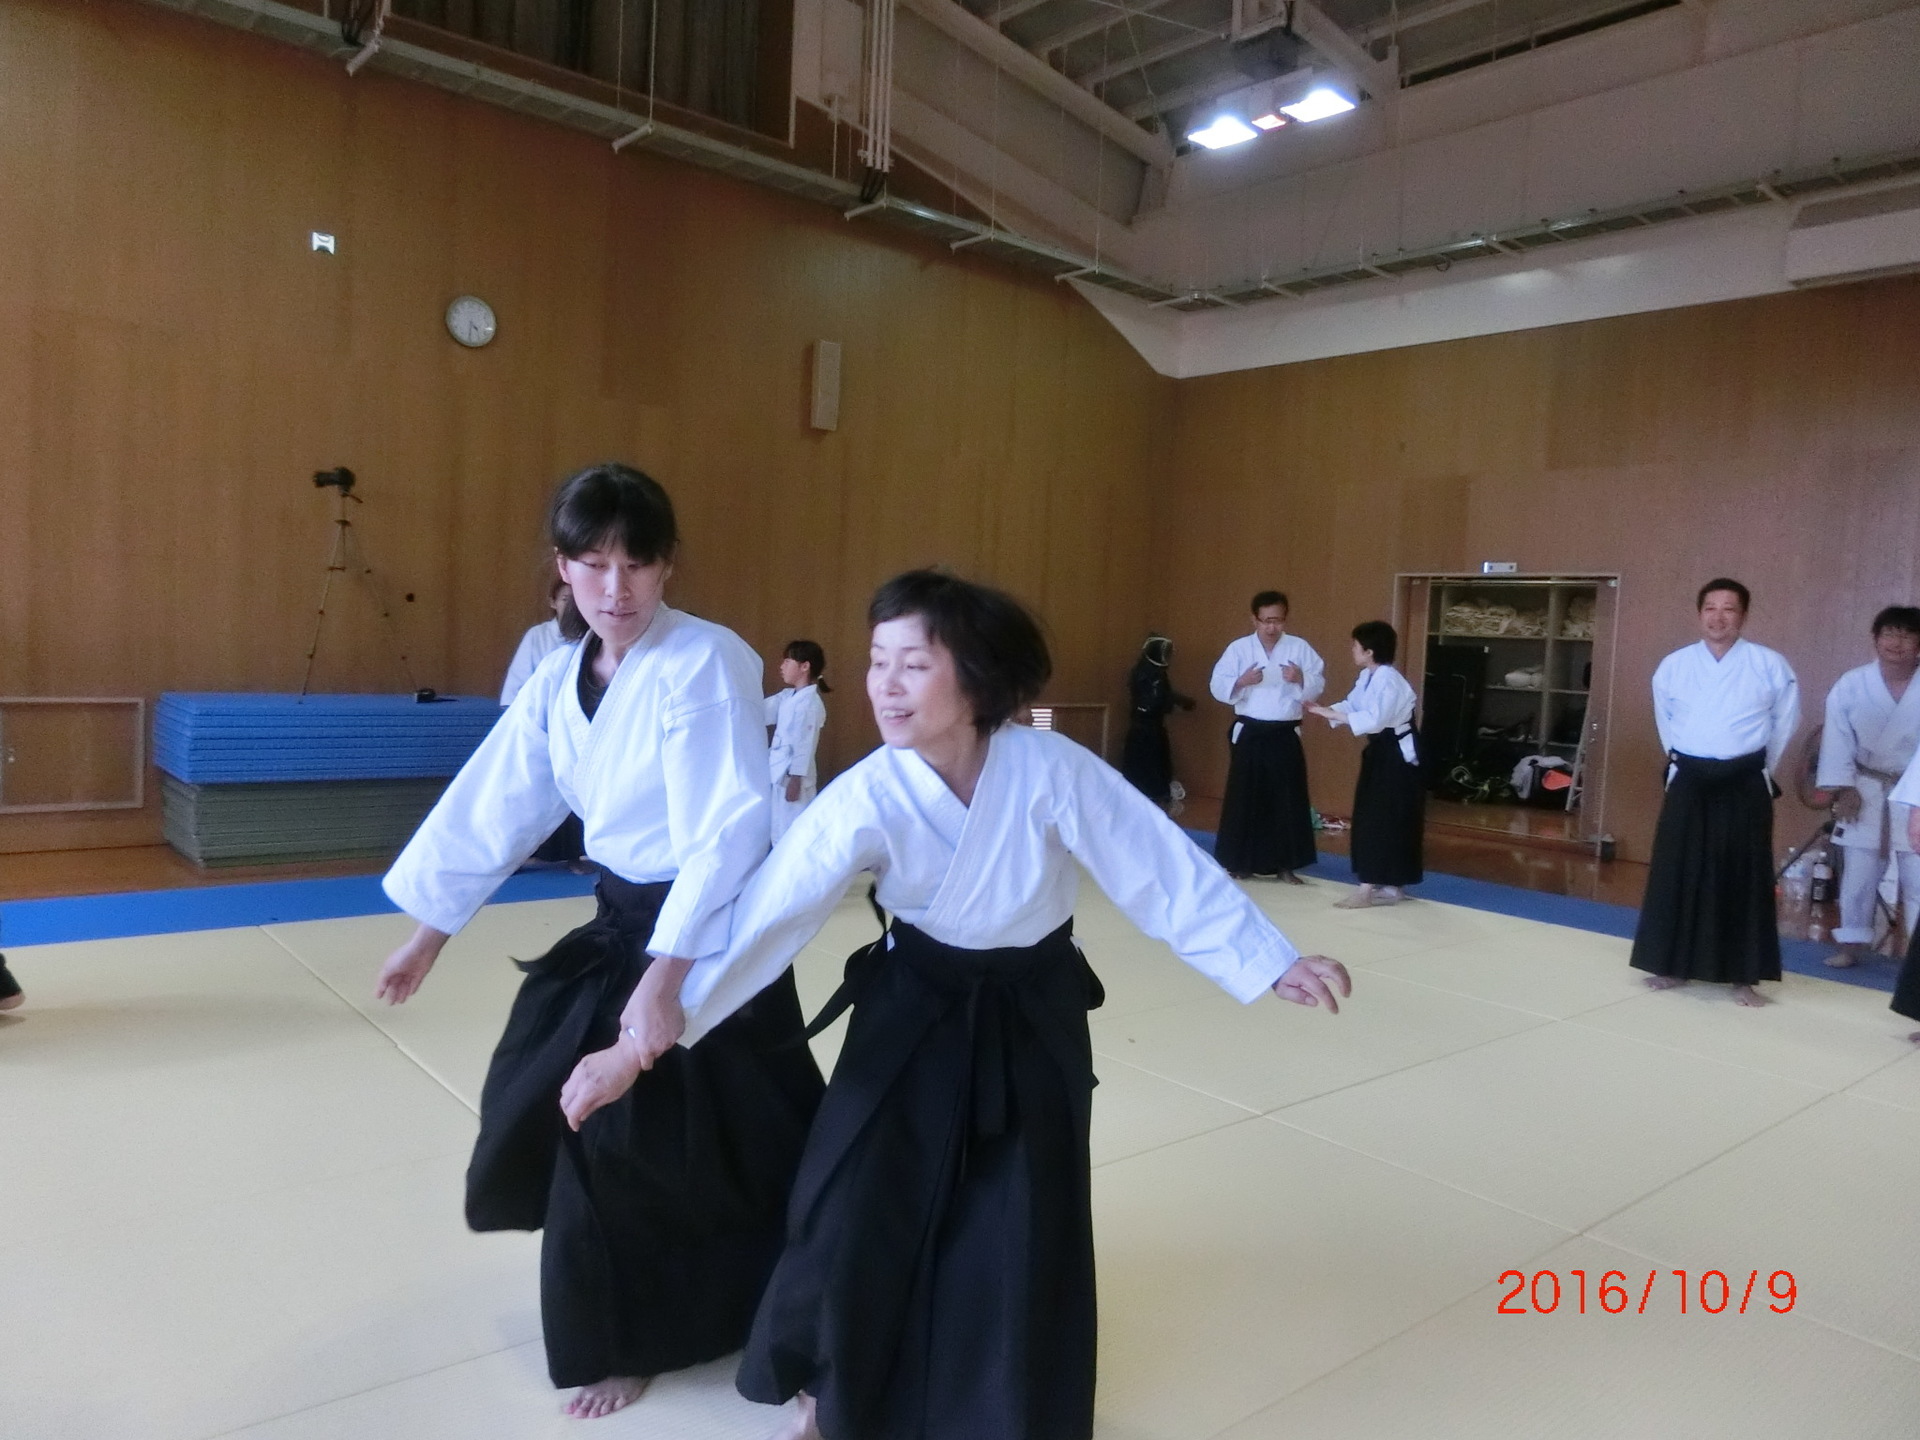 大阪住吉区の春風会合気道と女性の合気道 大阪 春風会合気道aikidoは大阪市住吉区の三稜中学挌技室で稽古しています